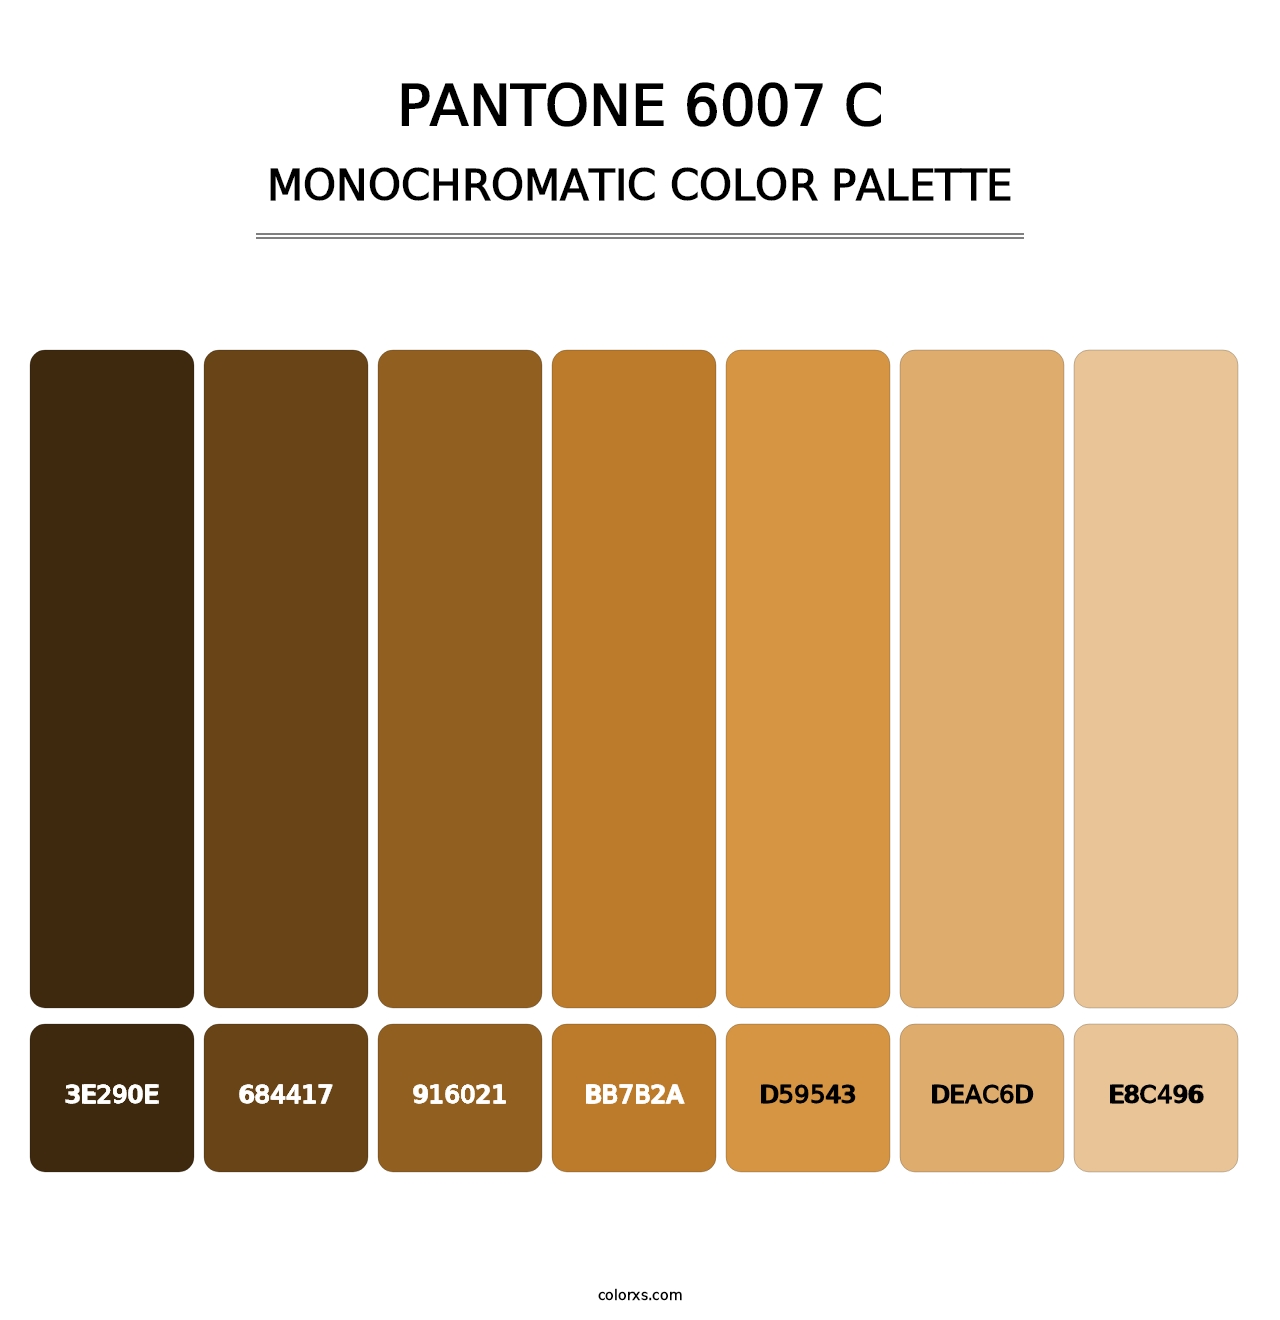 PANTONE 6007 C - Monochromatic Color Palette